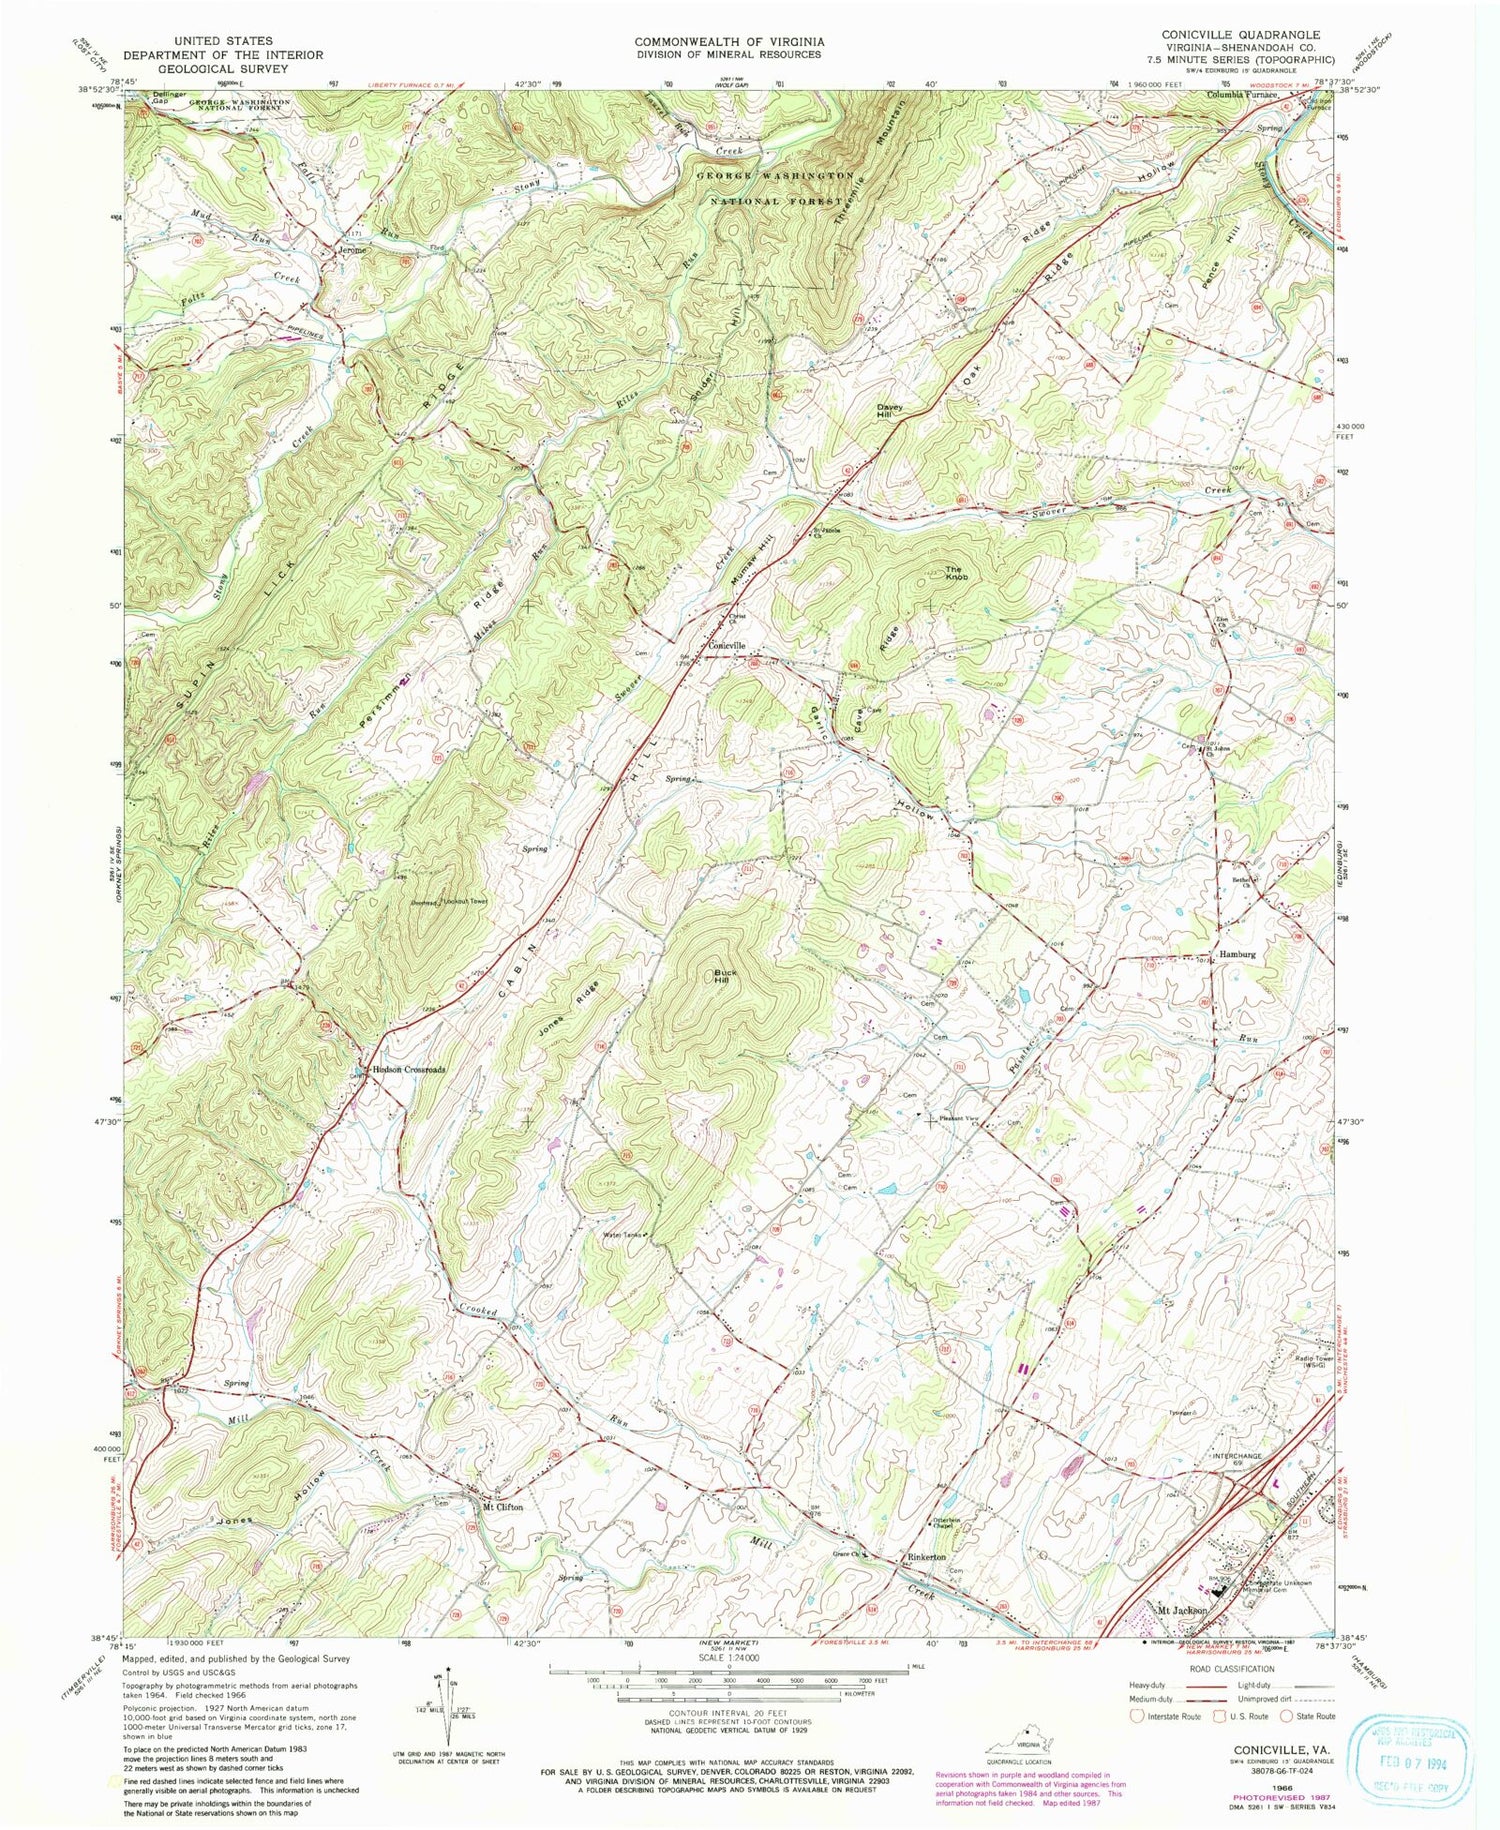 Classic USGS Conicville Virginia 7.5'x7.5' Topo Map Image